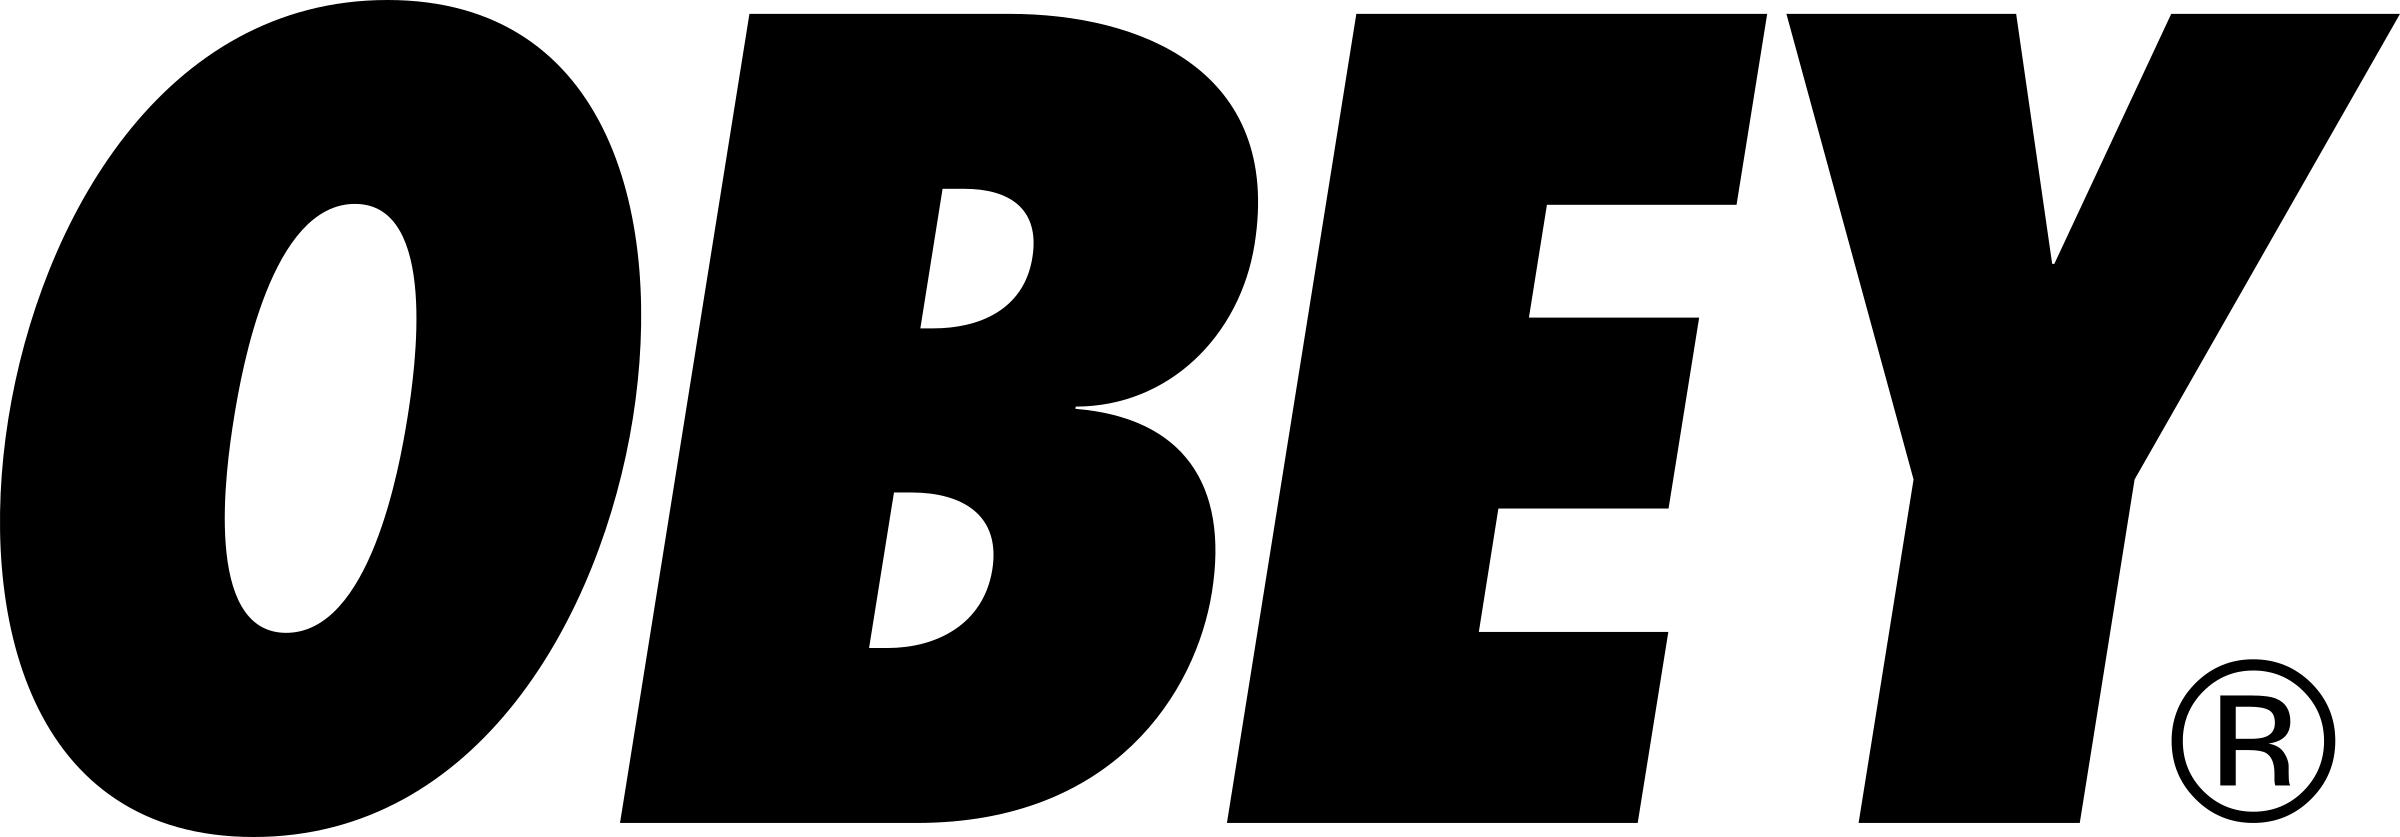 Black Obey Logo - Obey Logo PNG Transparent & SVG Vector